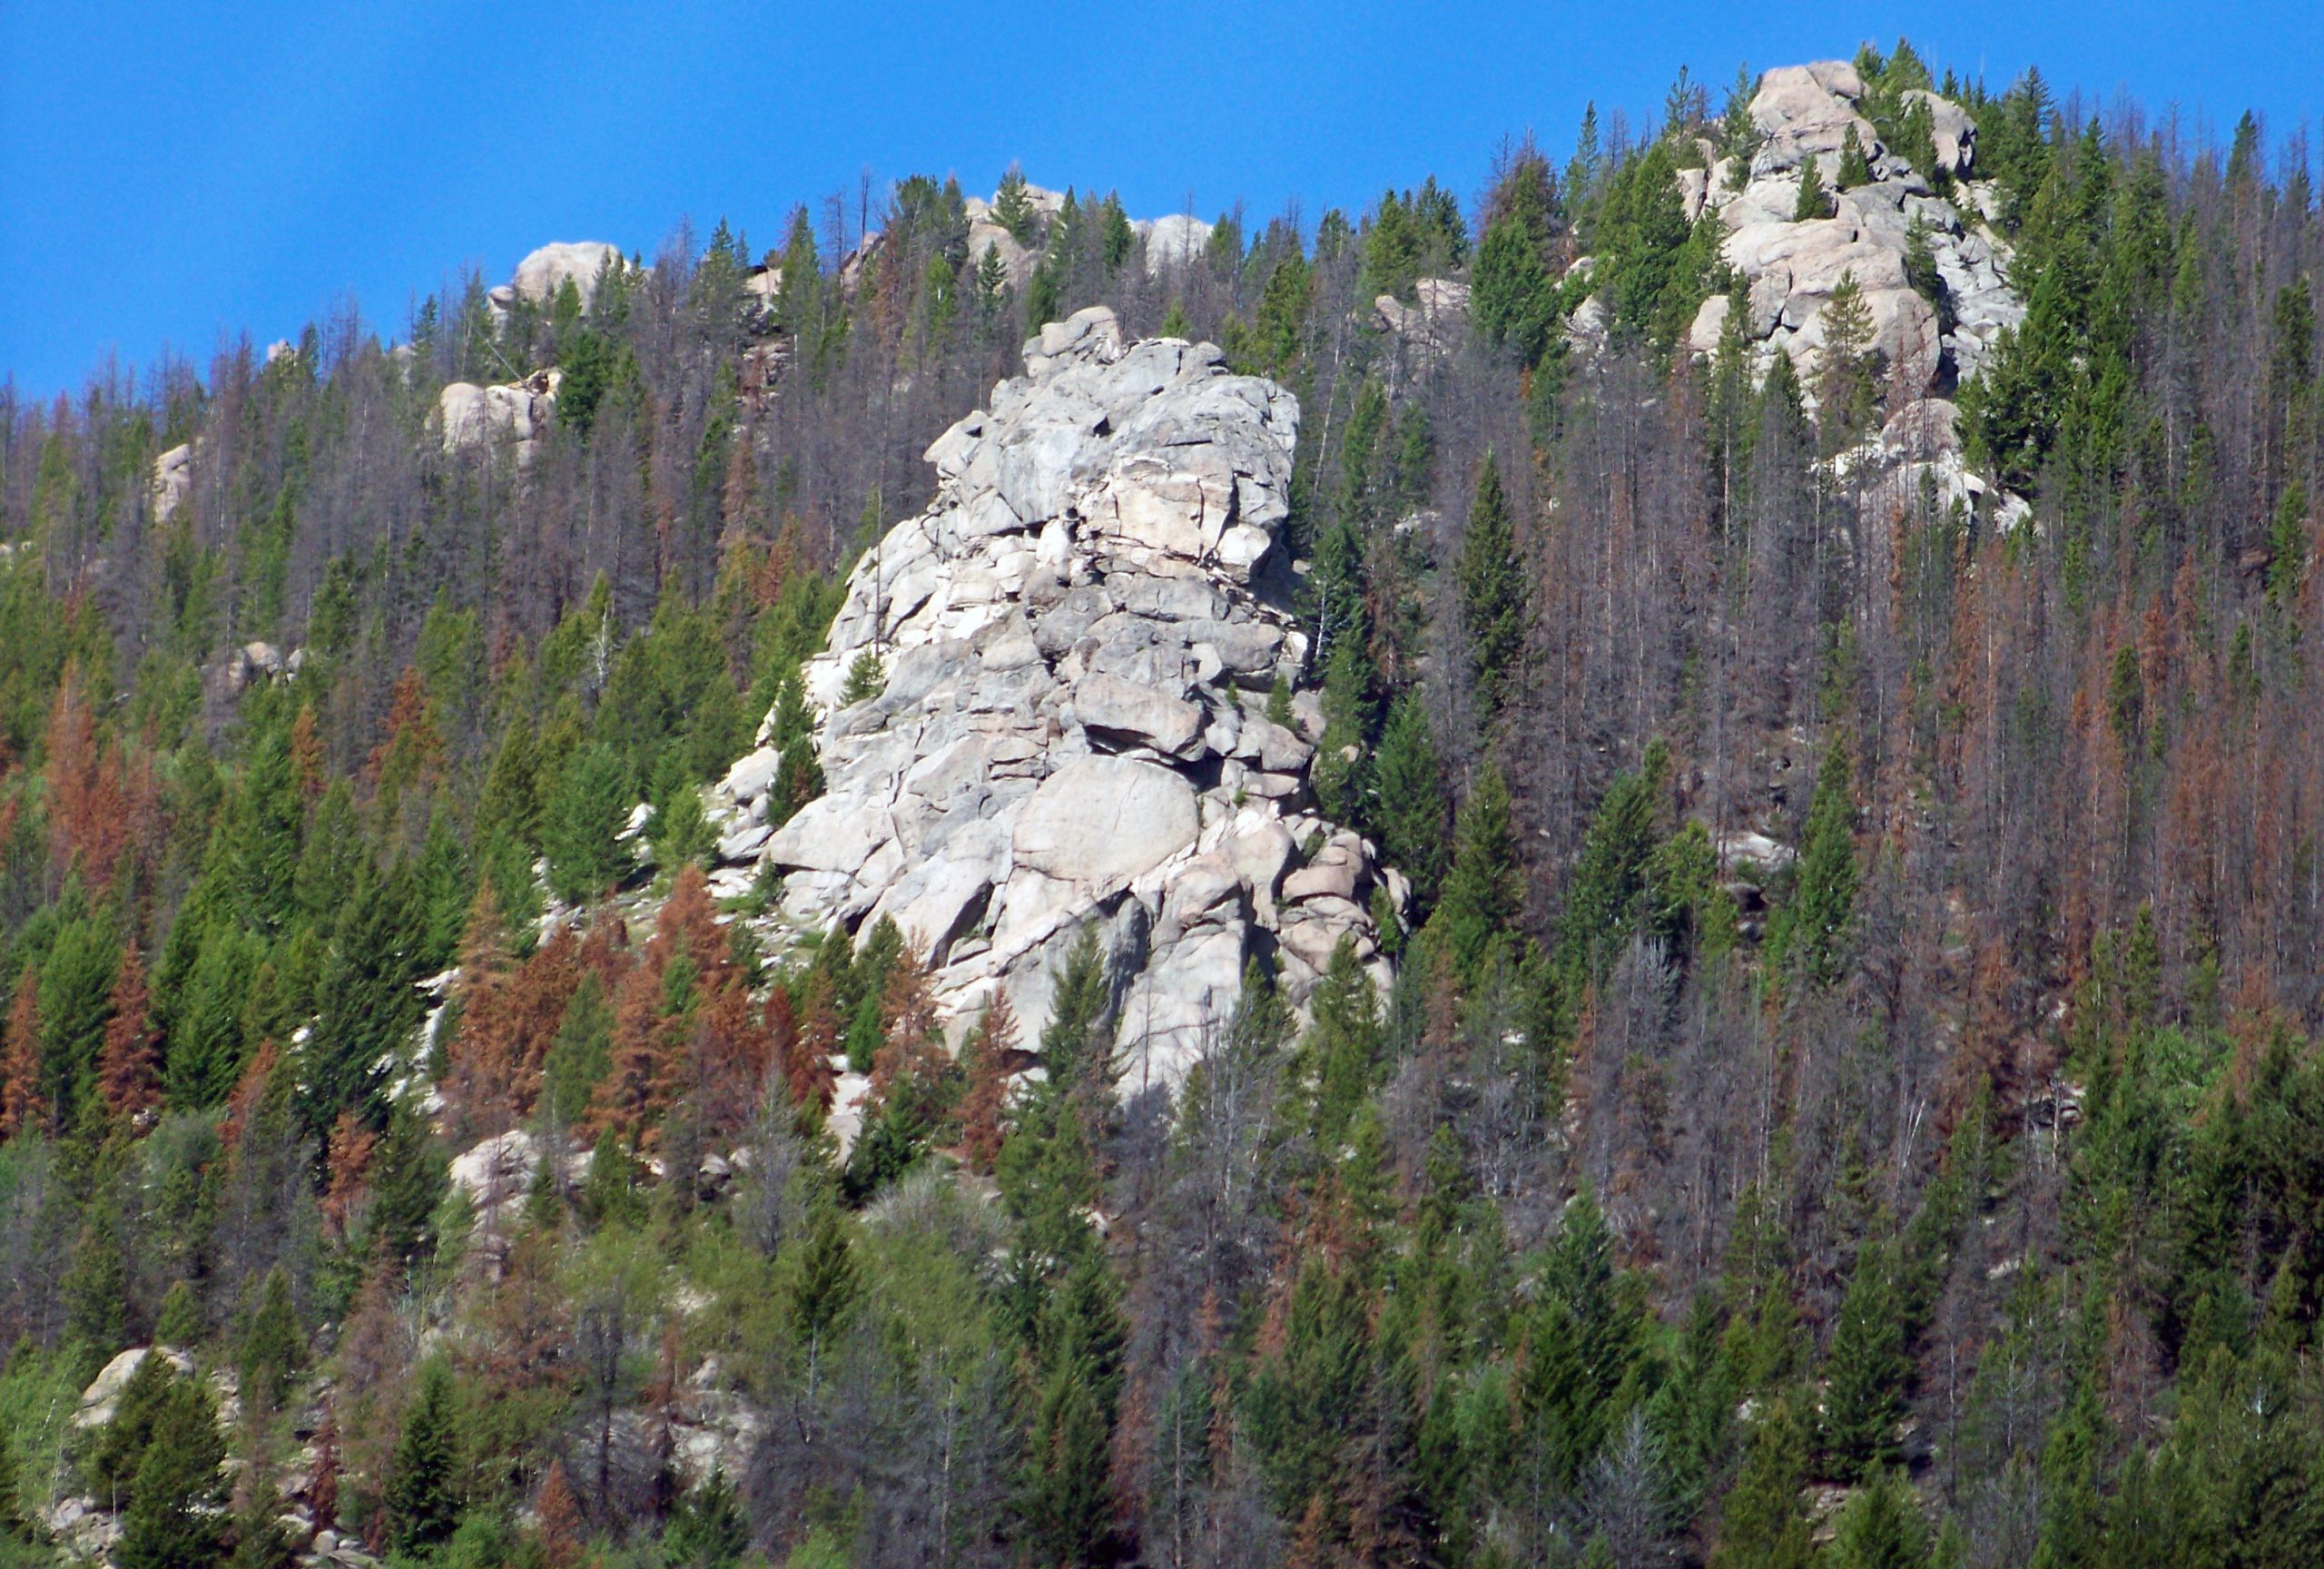 Exposure of white rock between tres